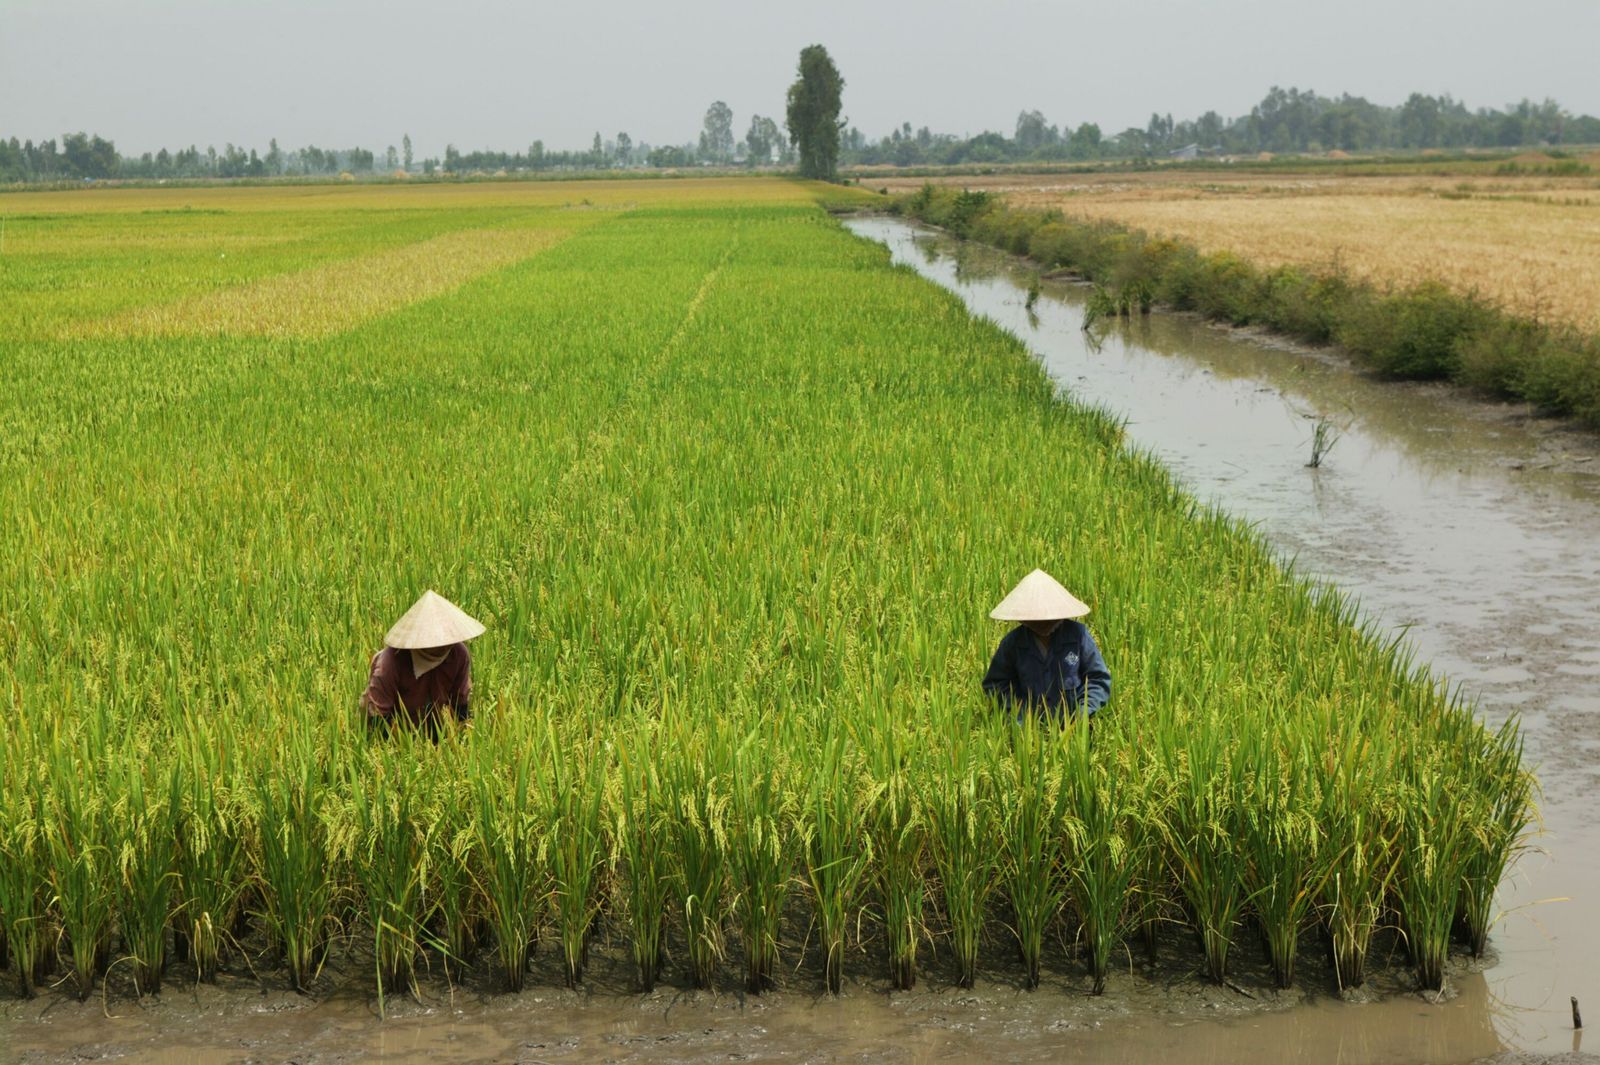 فيتنام تطلب من مزارعي الأرز الغرس المبكر خوفاً من الجفاف